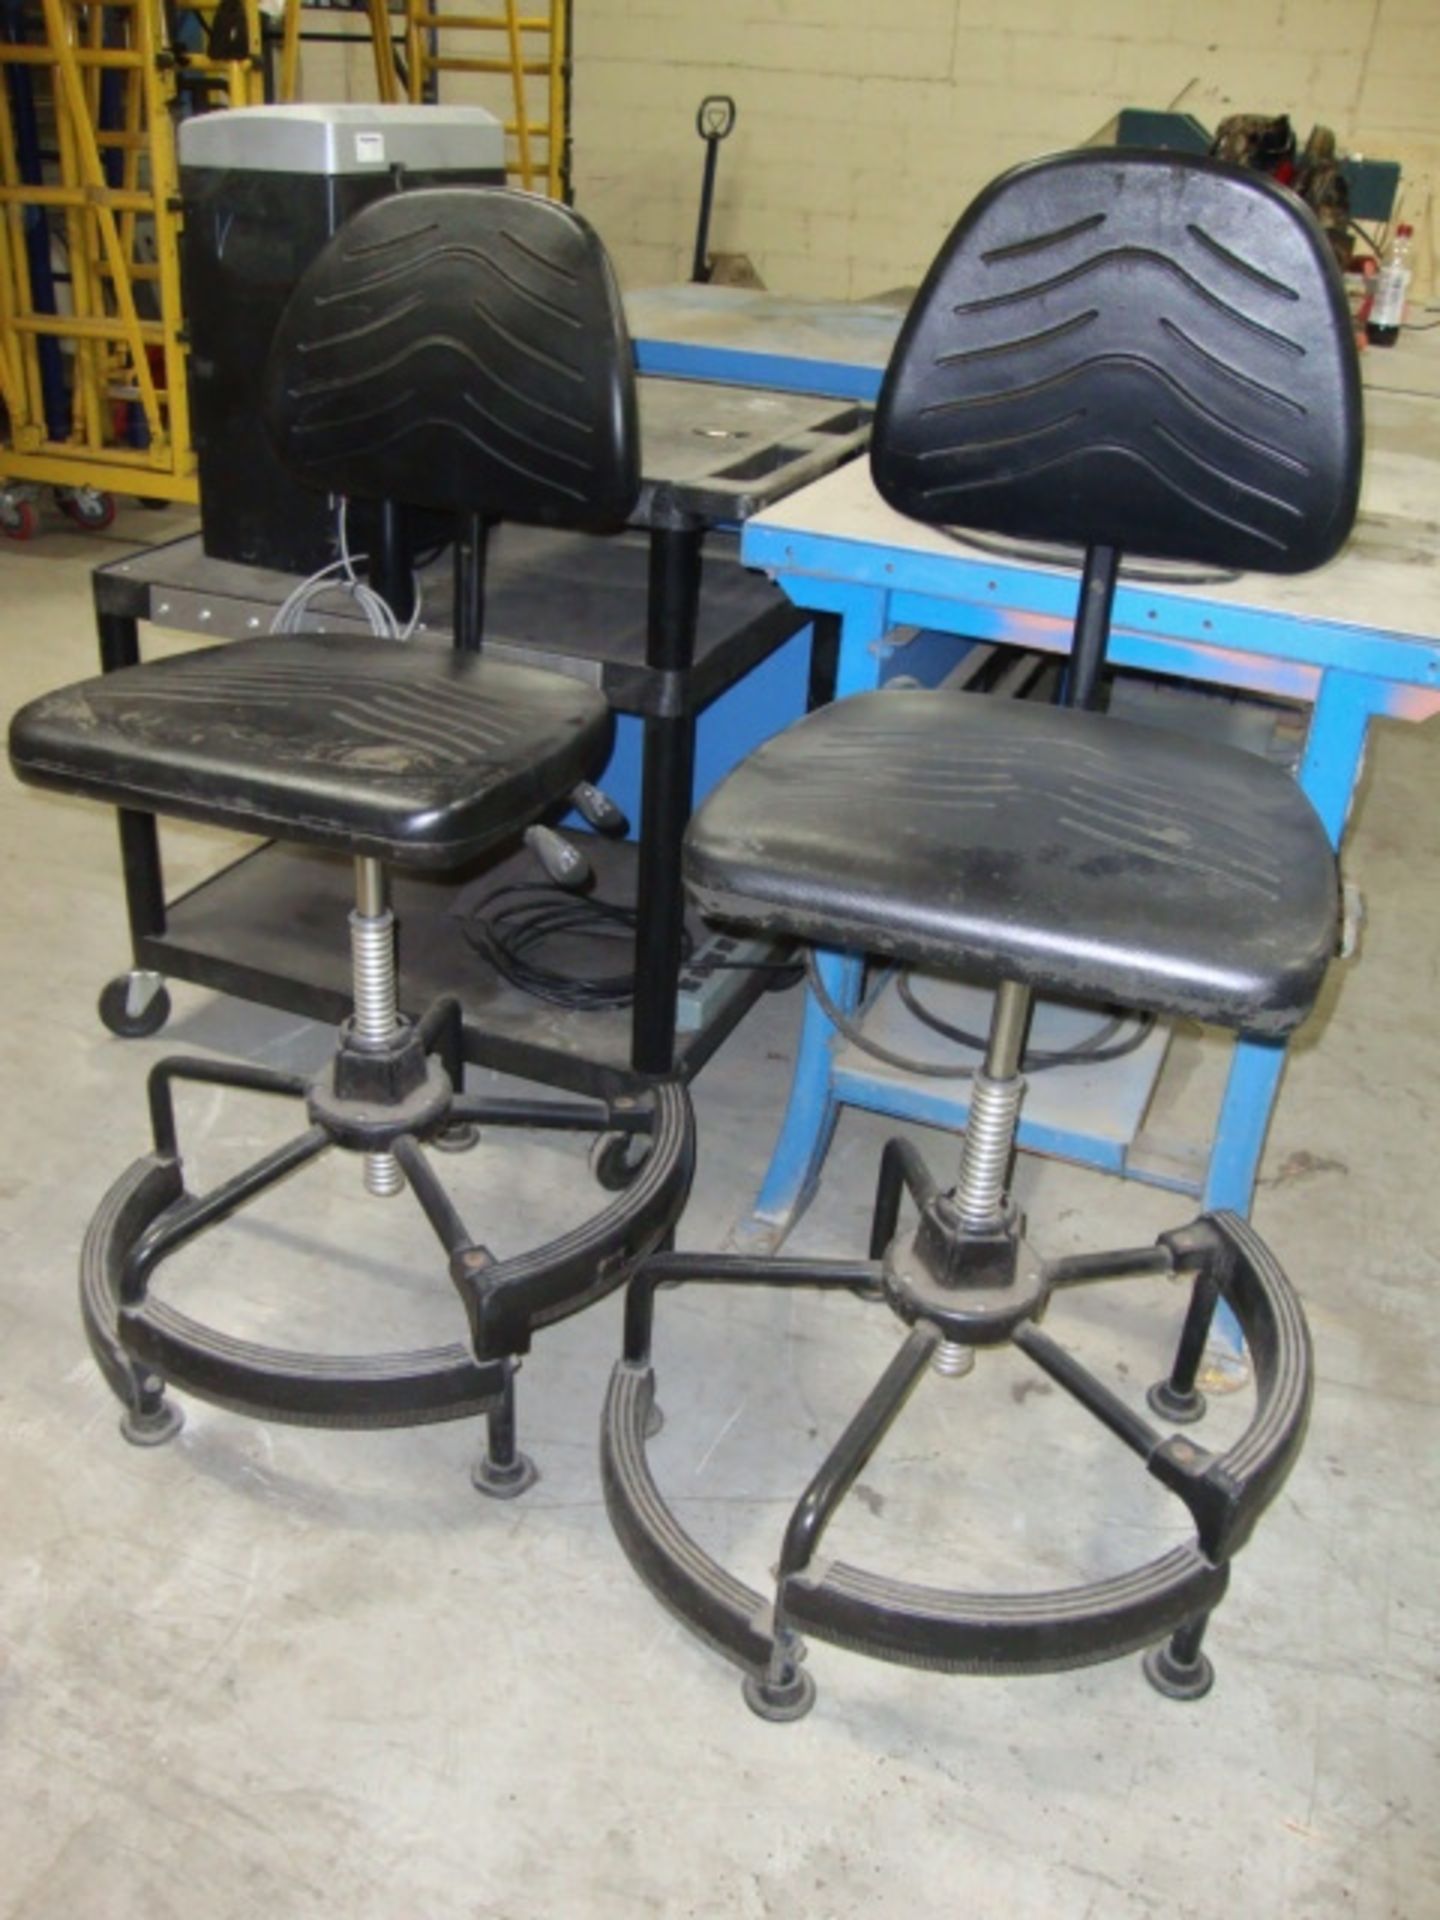 Pr of Safco Ergo Chairs, Model # 5120, adj. height and tilt